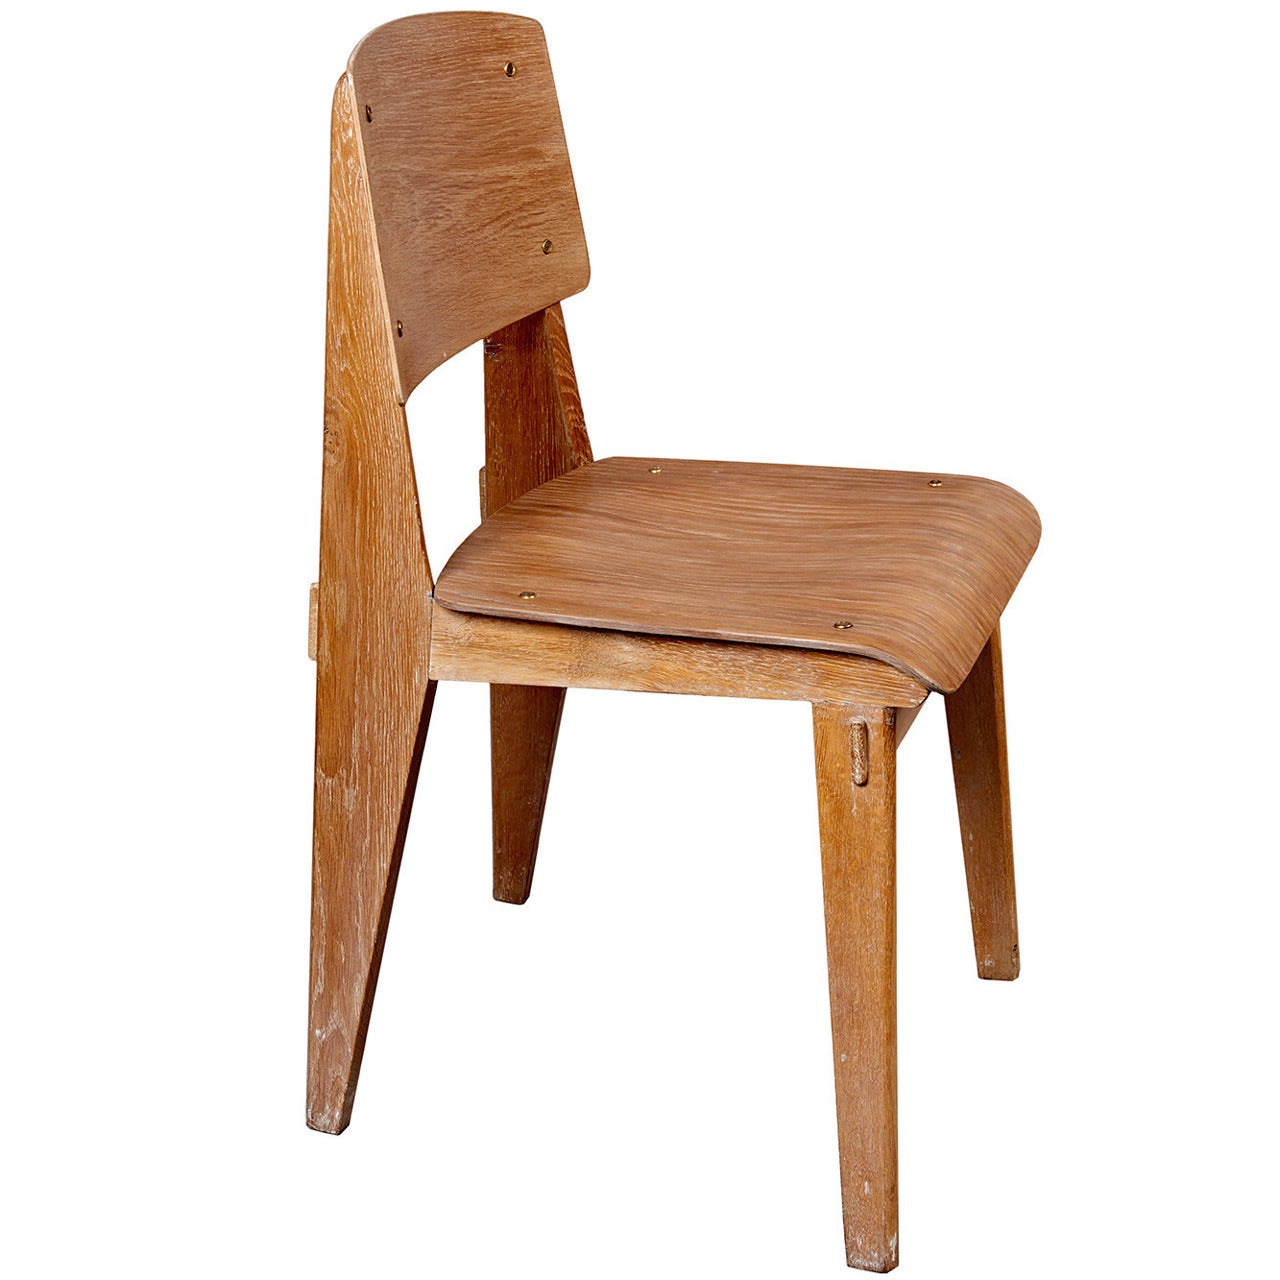 Standard Chair "Tout Bois" by Jean Prouvé